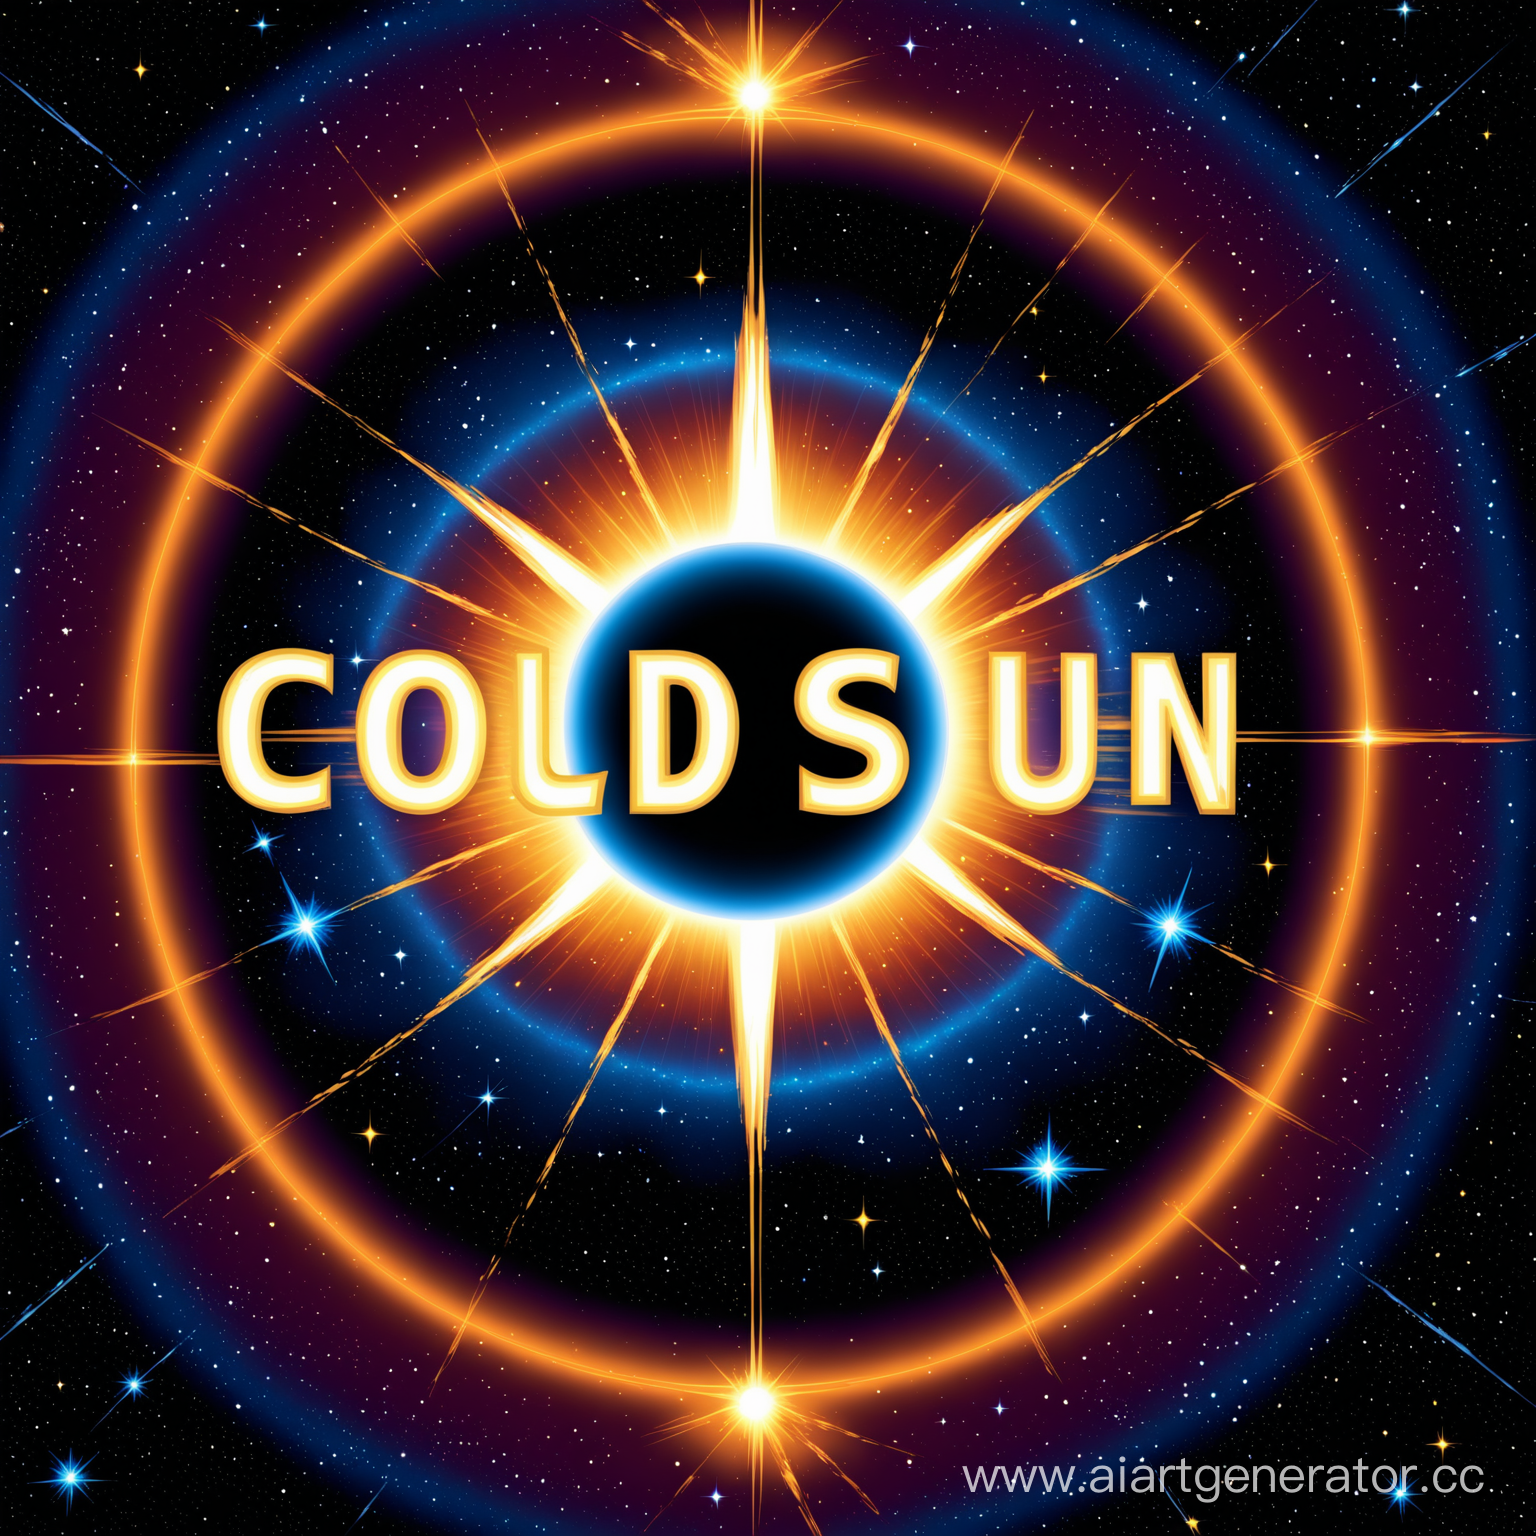 Космическая тема, имя ColdSun  по центру